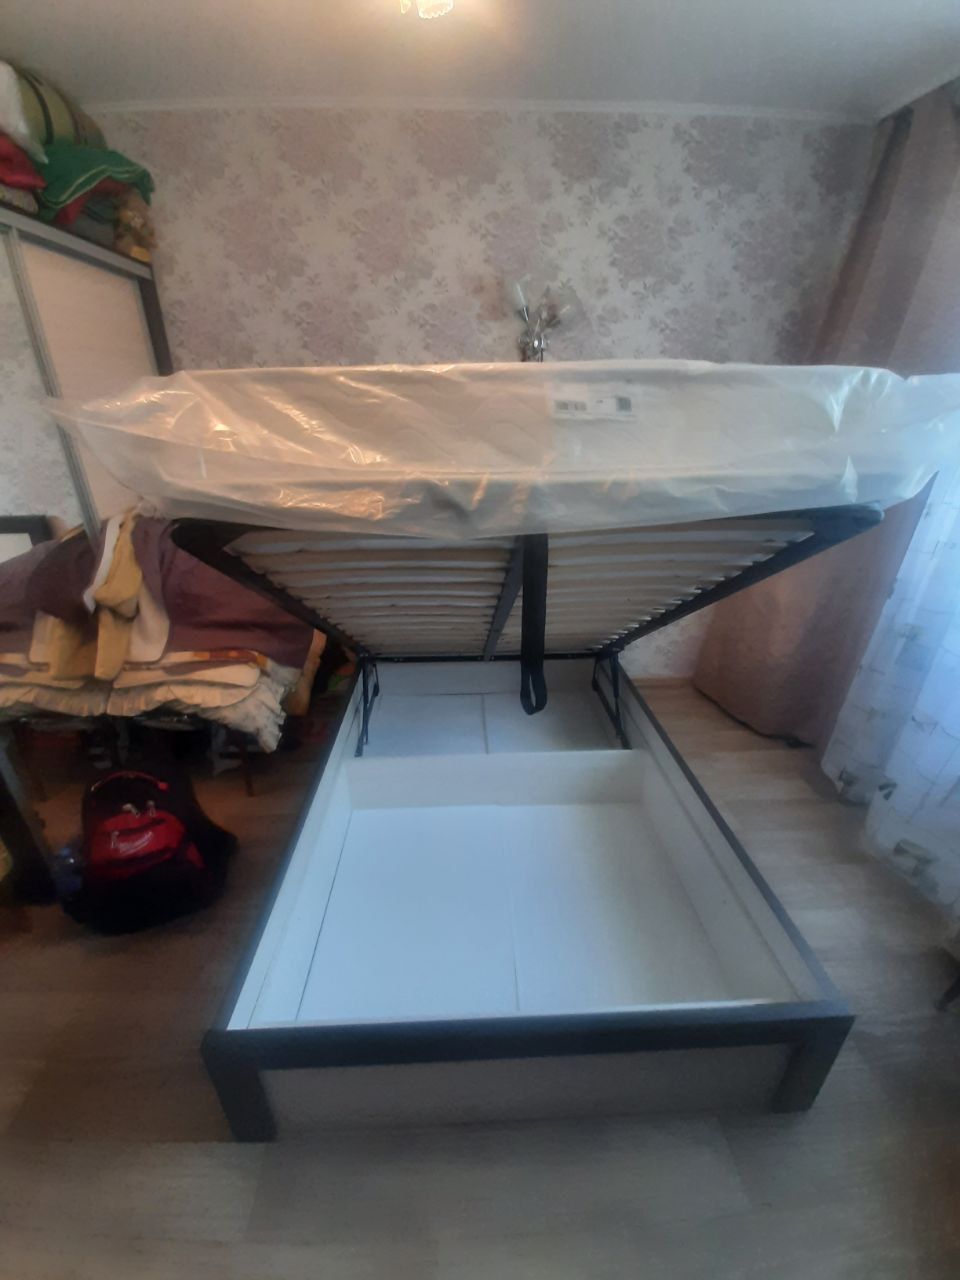 Полутораспальная кровать "Альба" 120 х 200 с ортопедическим основанием цвет дуб сантана